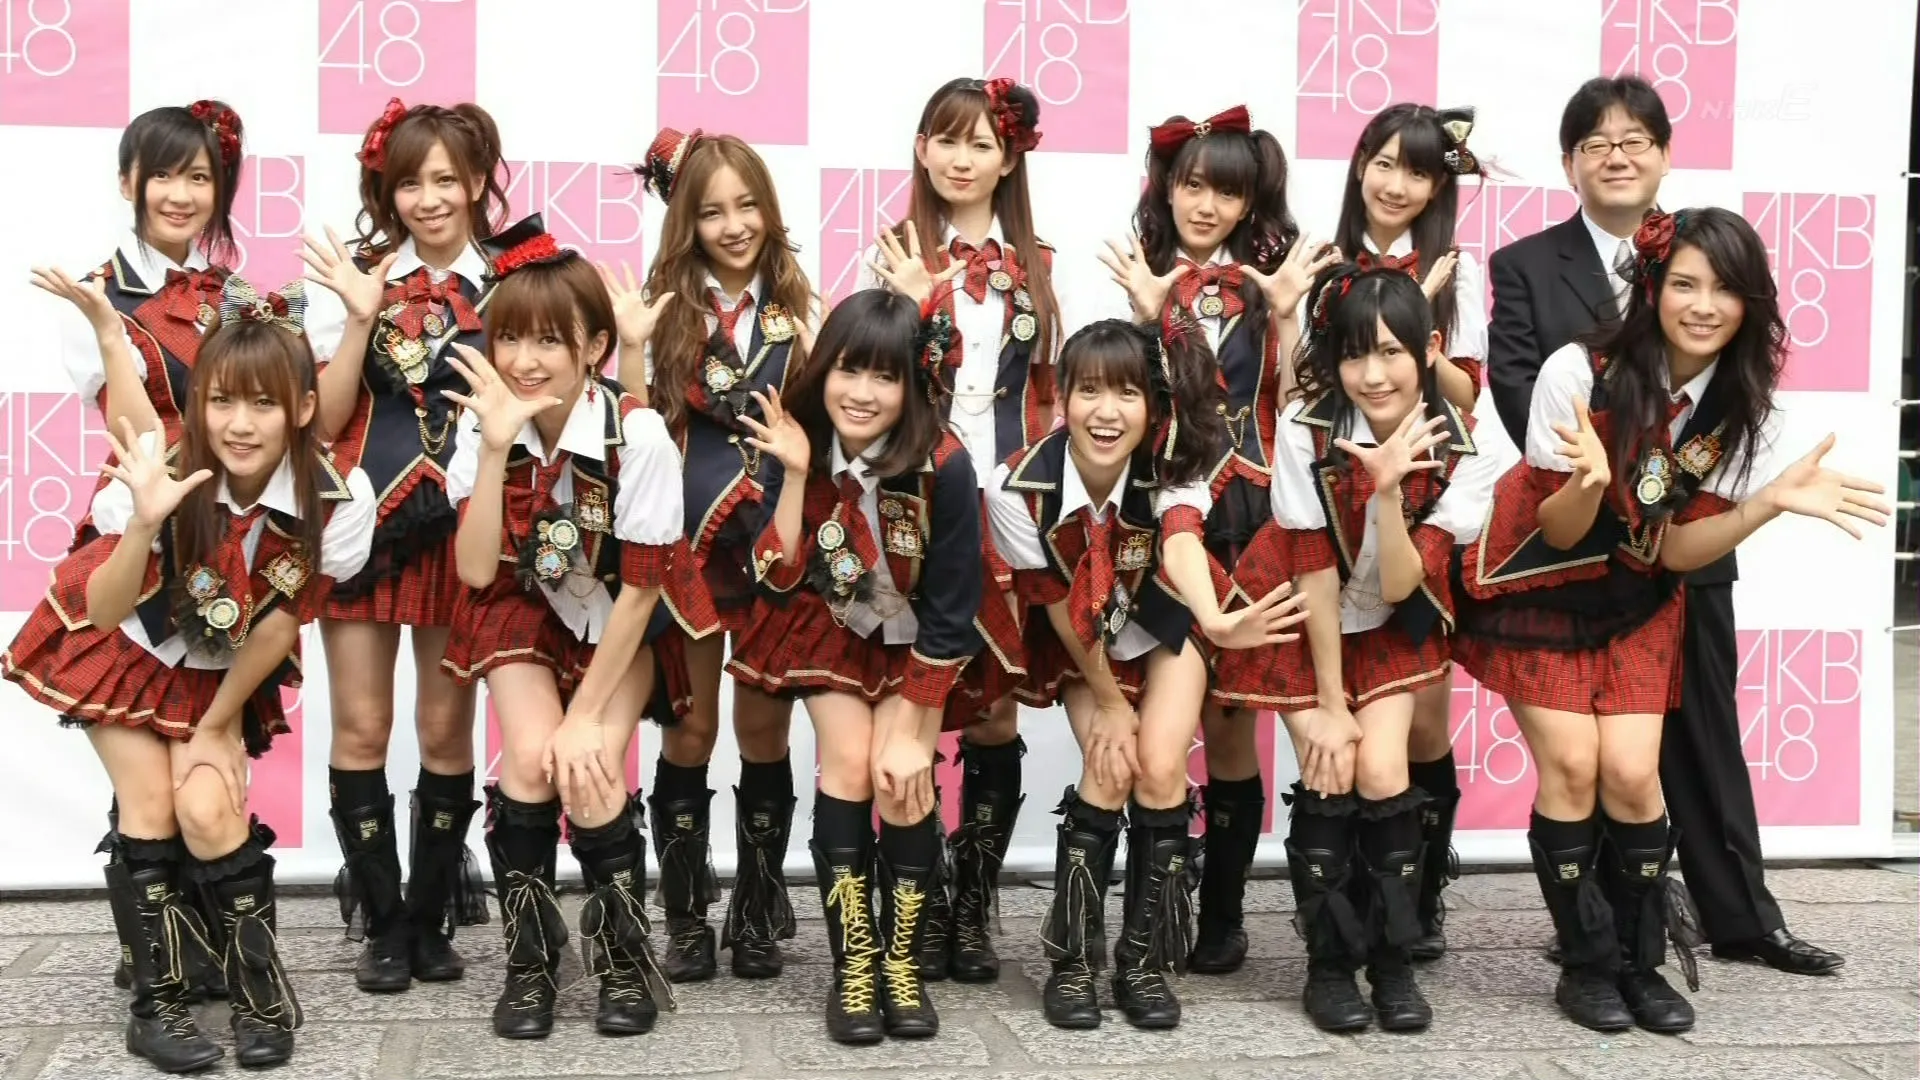 Mex48: ¿Tendremos idols mexicanas al estilo de AKB48?